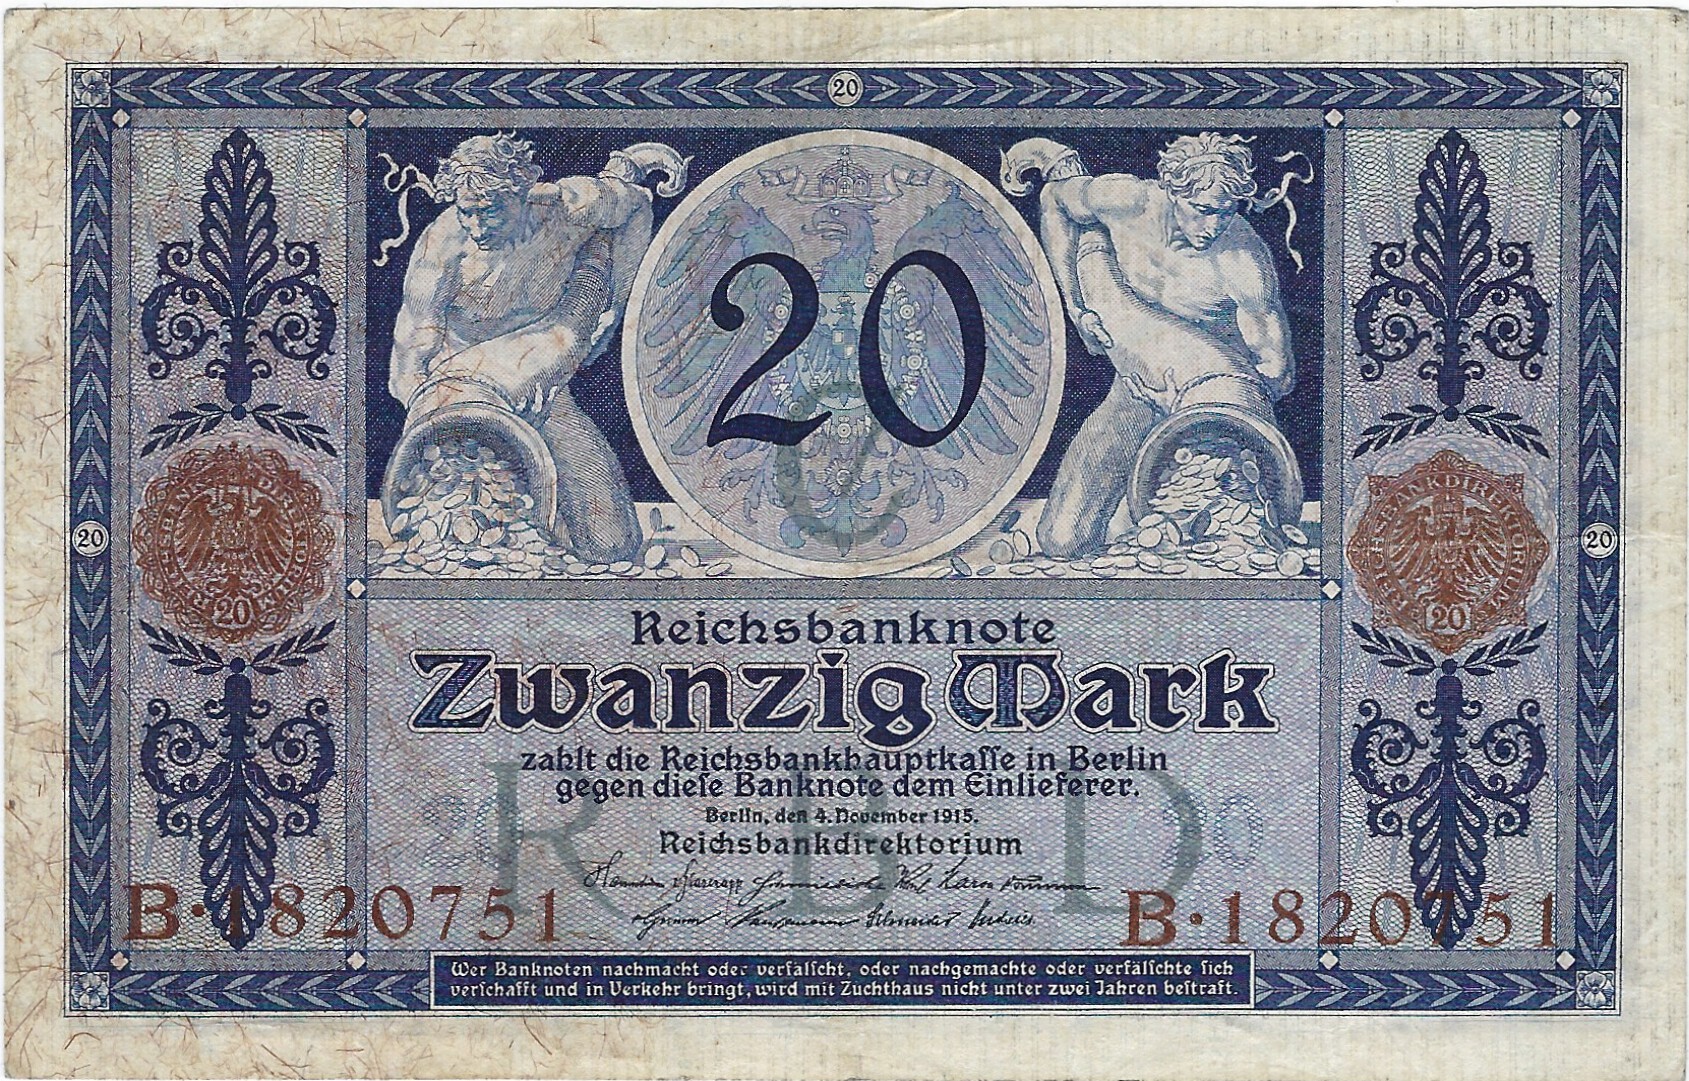 Reichsbanknote zu 20 Mark vom 4. November 1915 nach einem Entwurf von Arthur Kampf